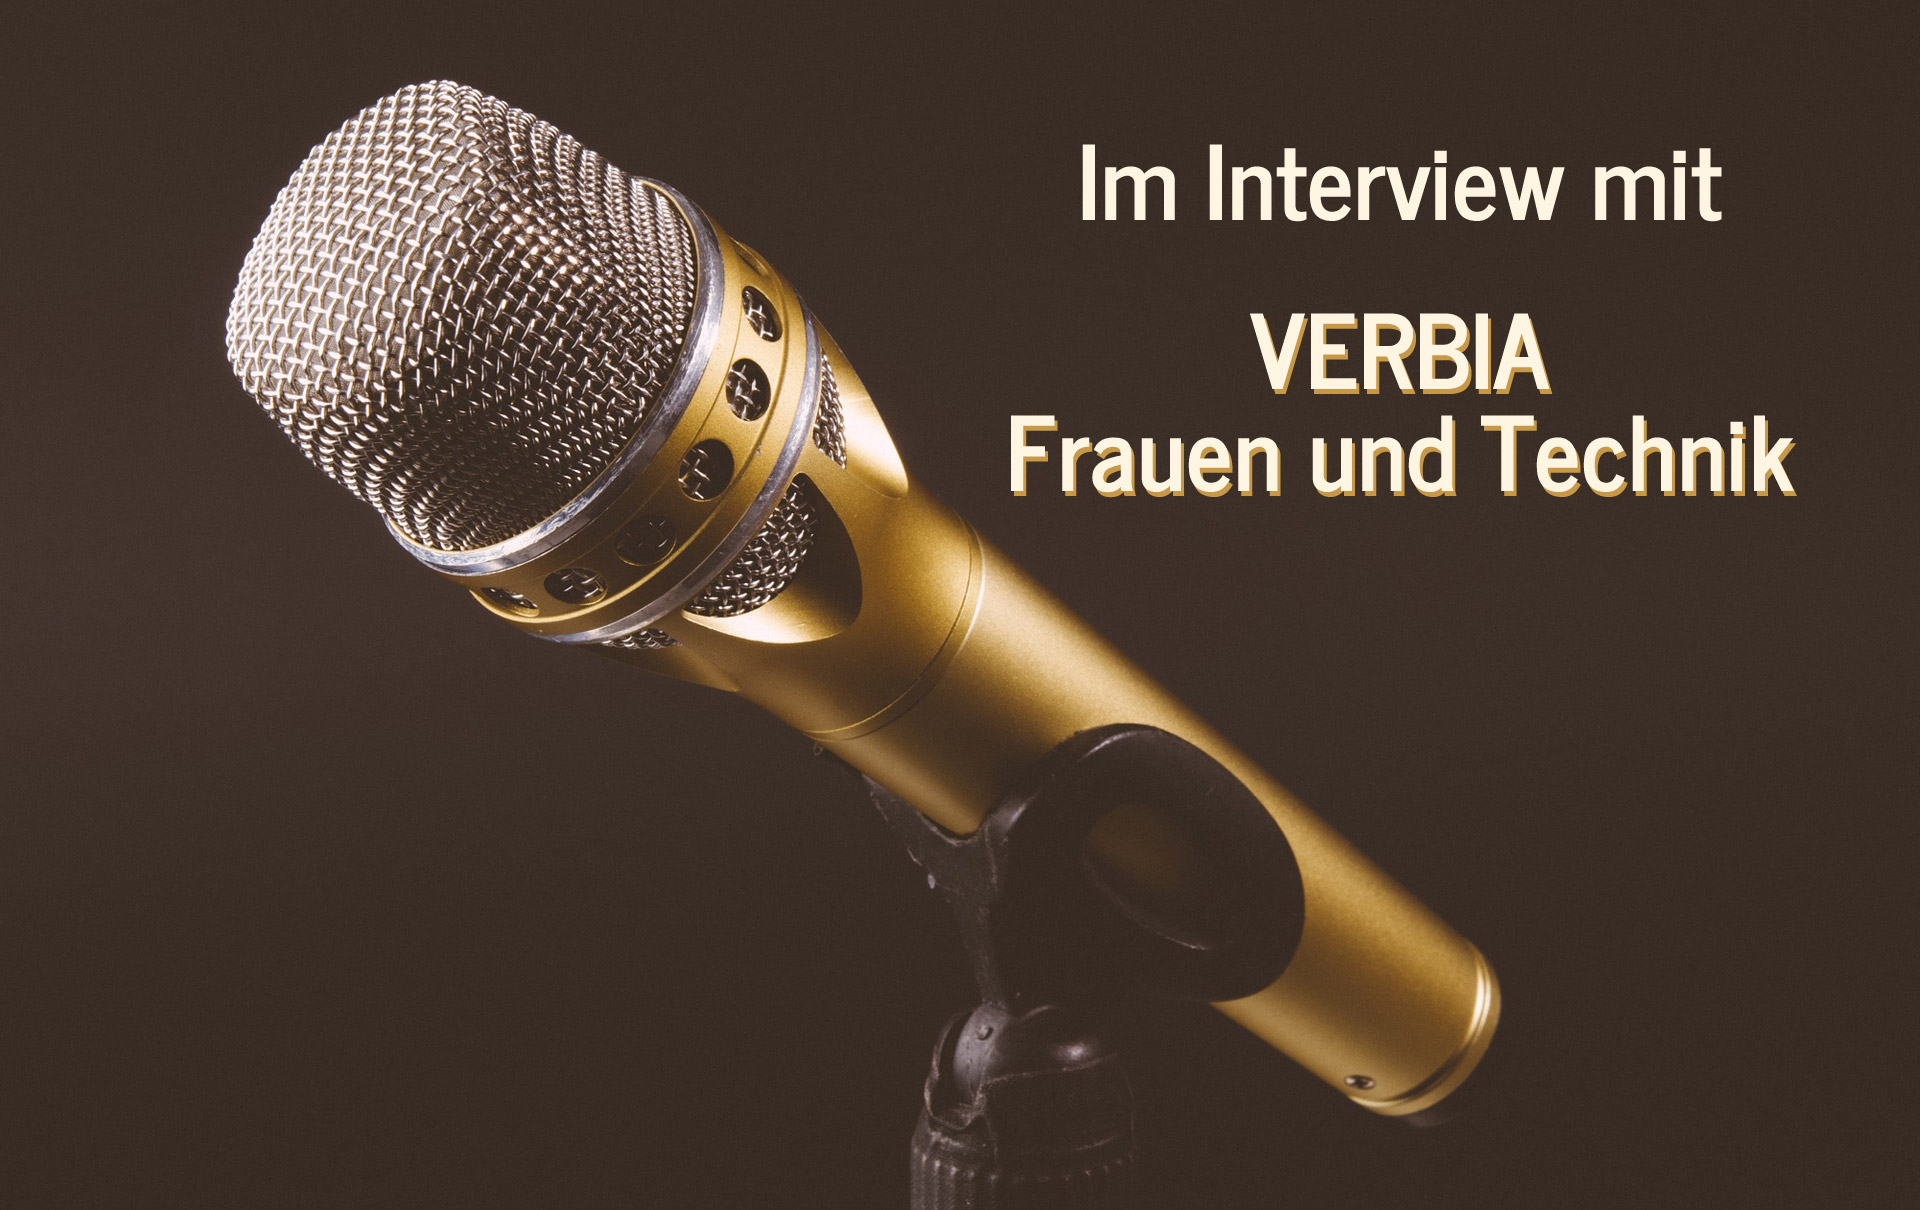 Im Interview mit Simone Fasse von Verbia - Fraunen und Technik